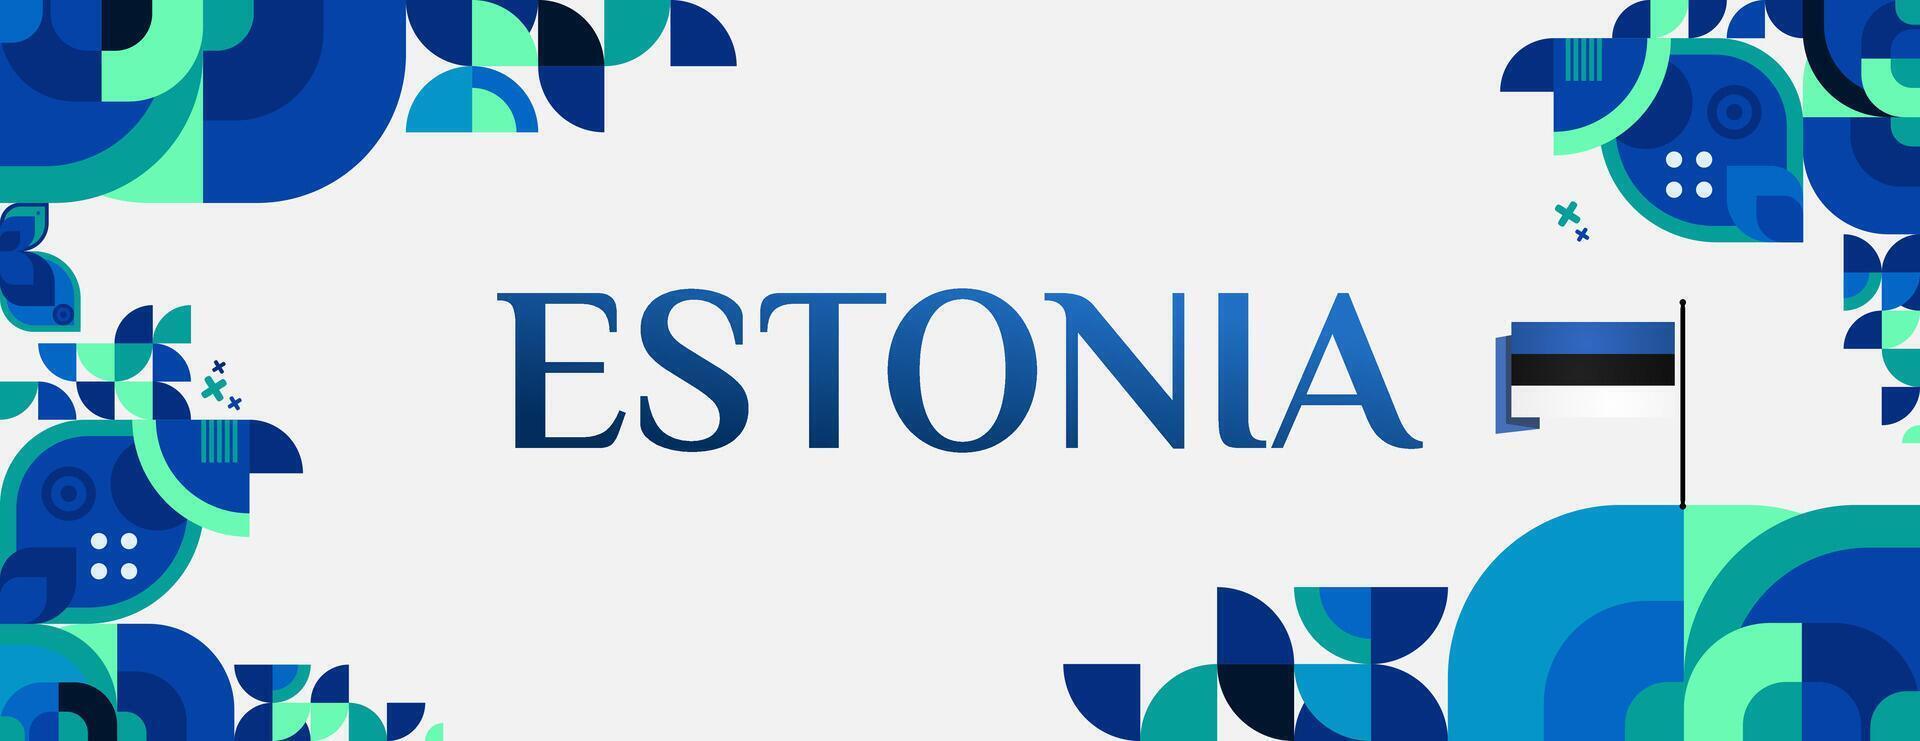 Estland Unabhängigkeit Tag Banner im modern bunt geometrisch Stil. glücklich National Unabhängigkeit Tag Gruß Karte Startseite mit Typografie. Vektor Illustration zum National Urlaub Feier Party